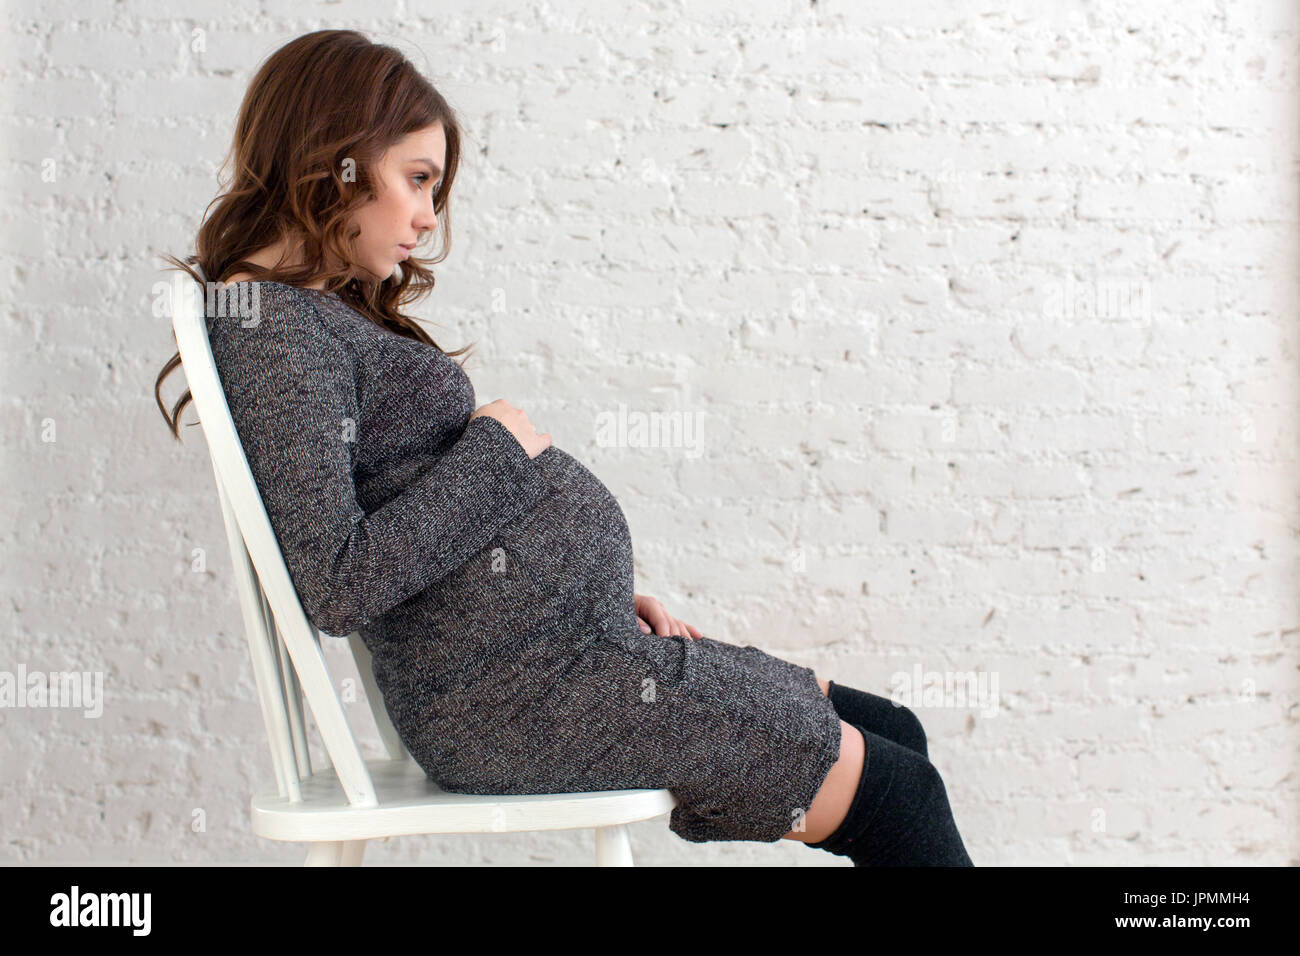 Les femmes enceintes, assis sur une chaise posing Banque D'Images